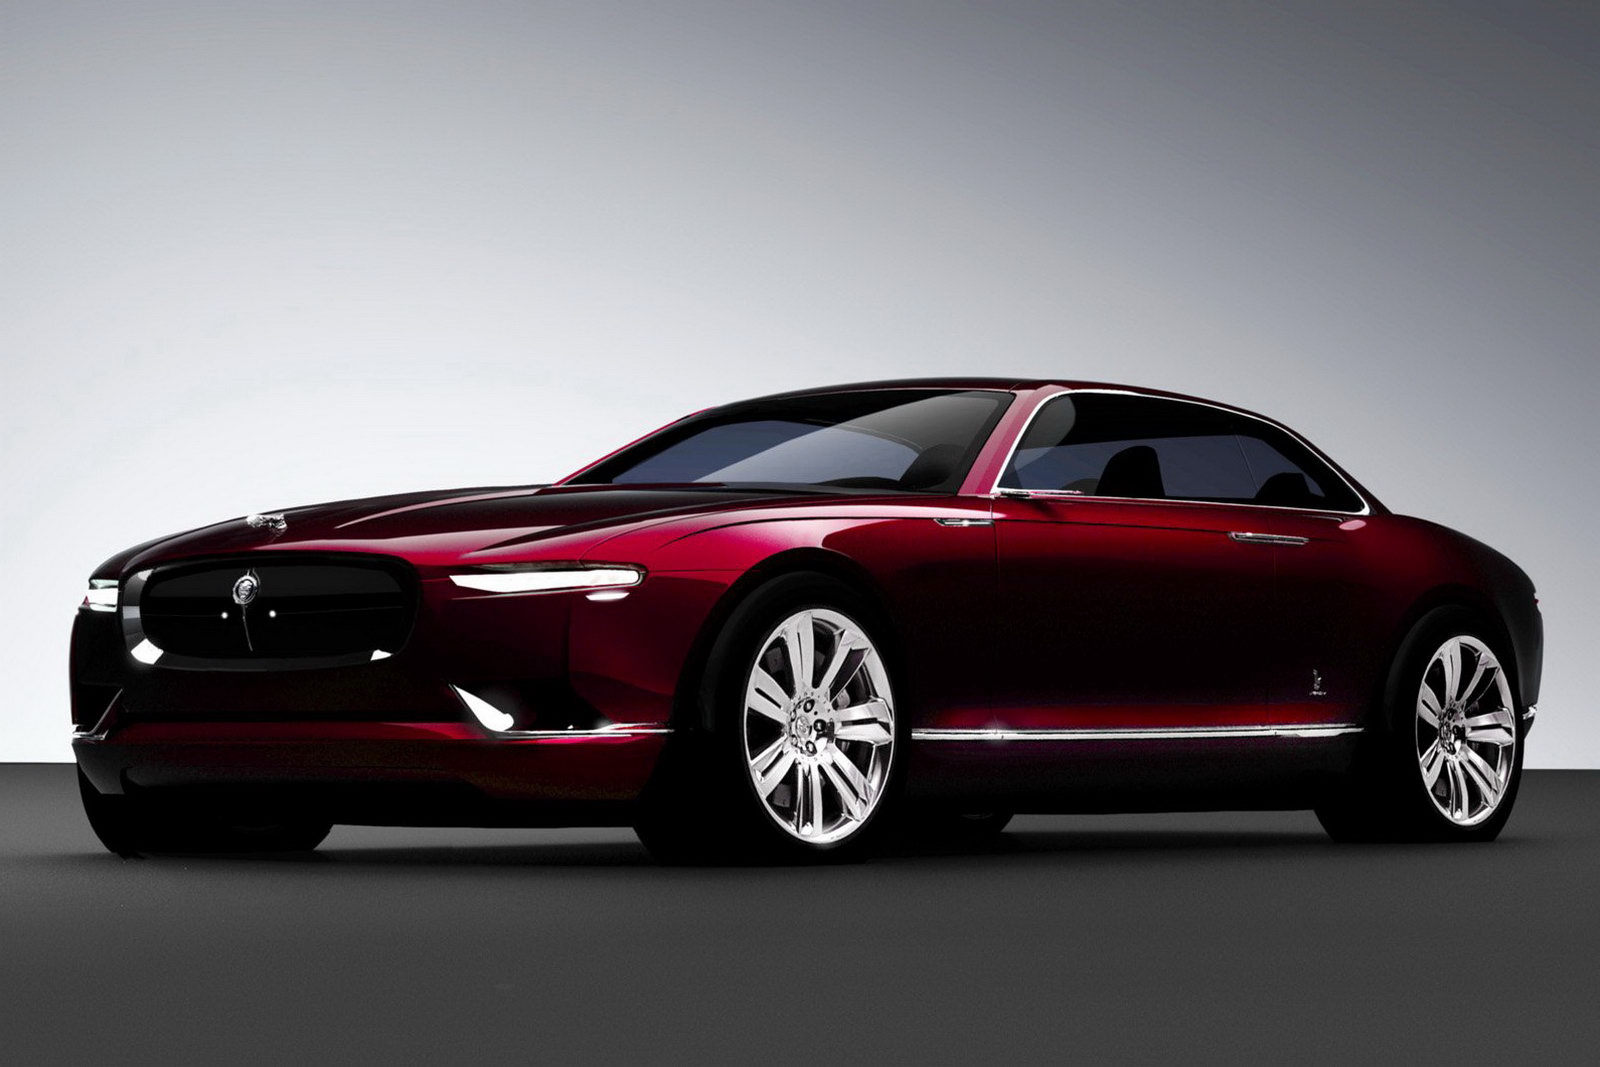 Conceptul Bertone realizat pe baza unui Jaguar se anunta foarte interesant